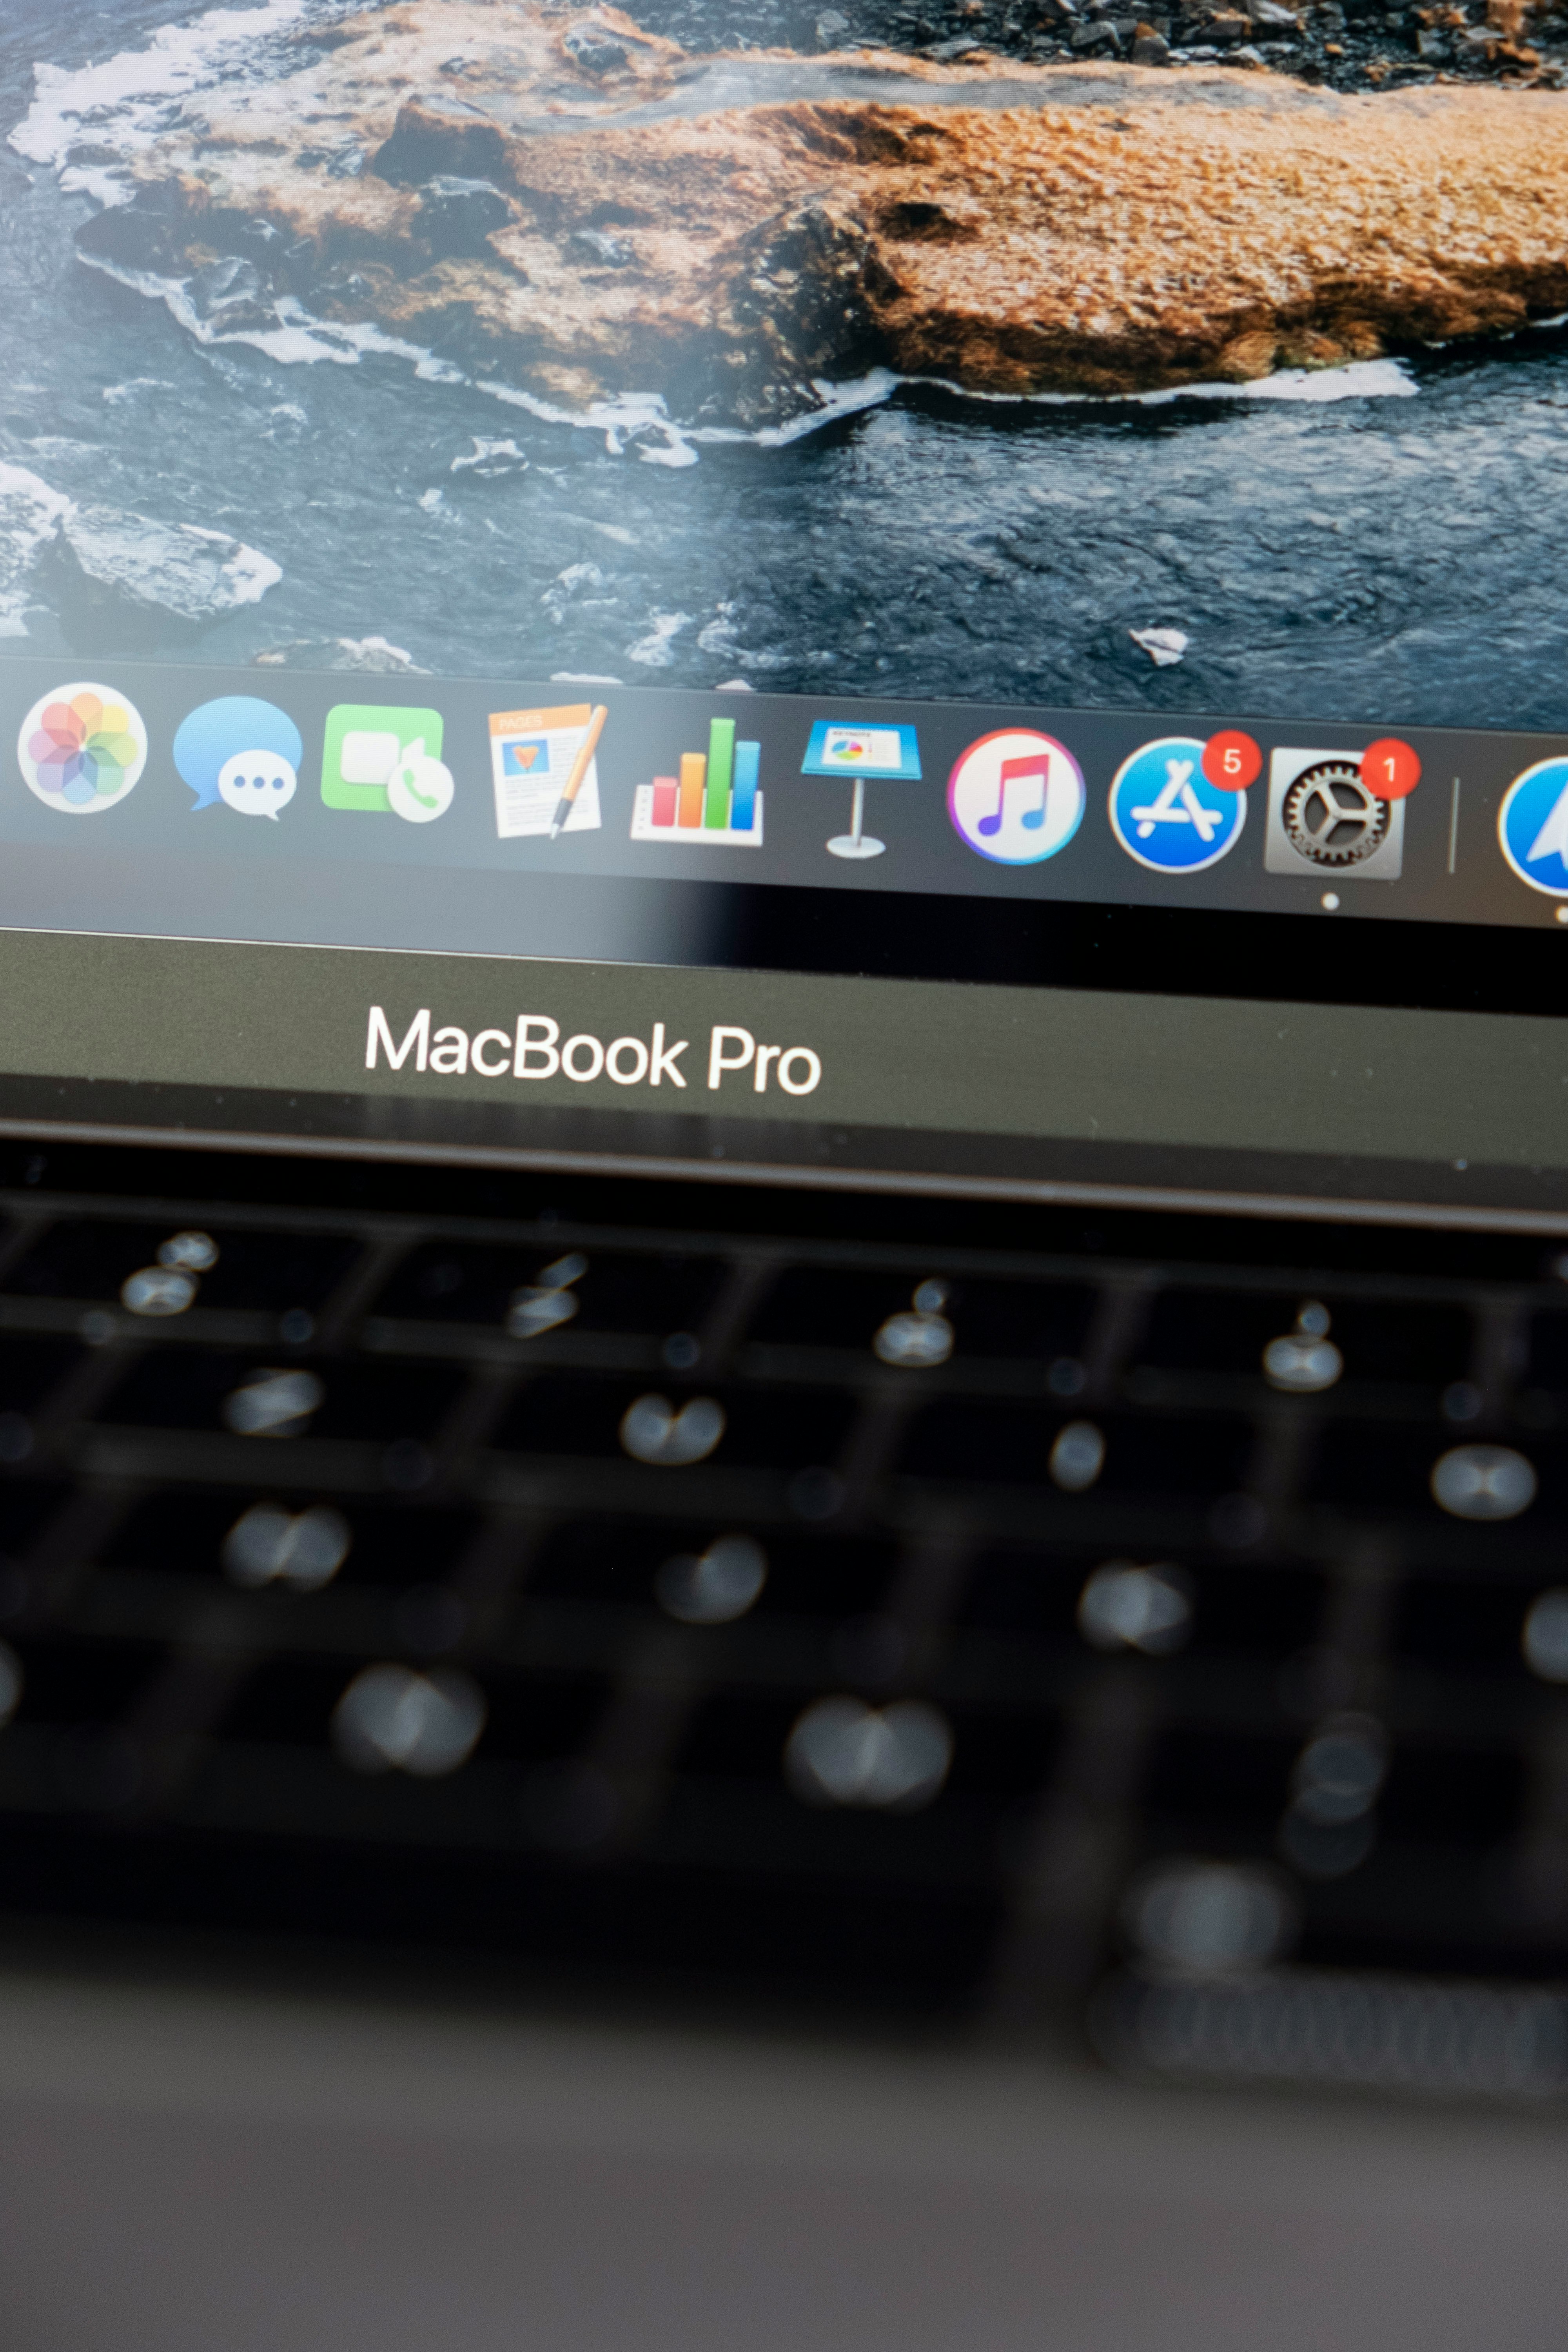 macbook pro displaying 3 00